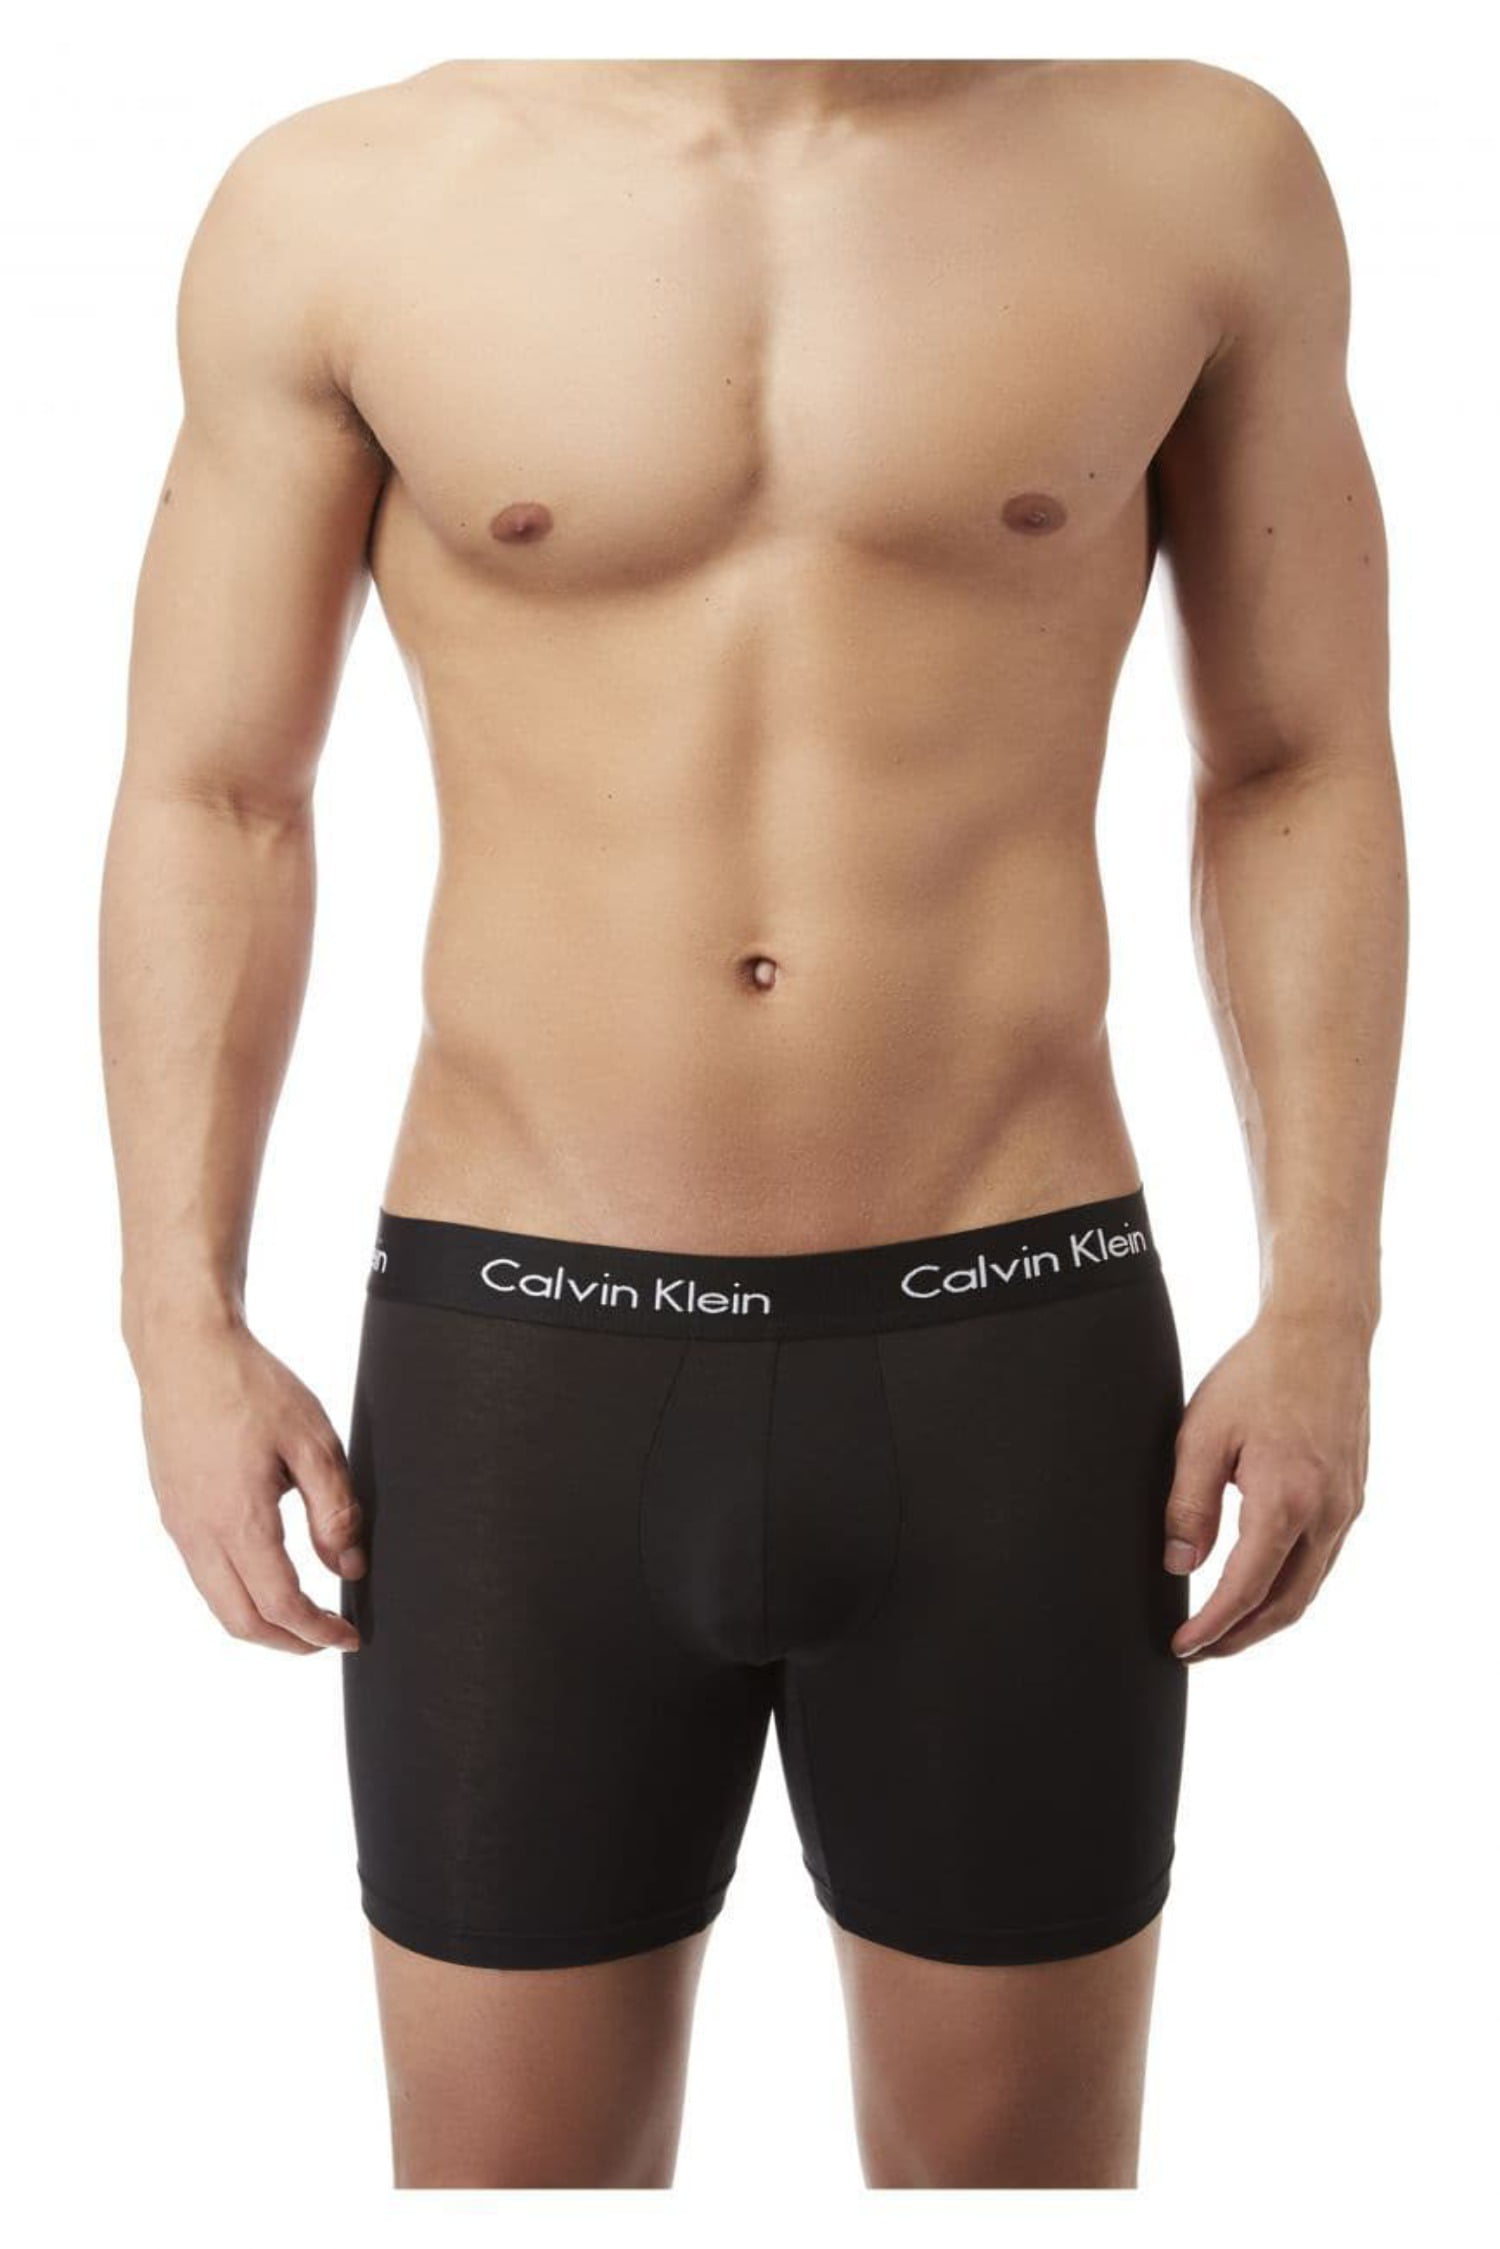 Calvin Klein NB1427-001 Body Modal Boxer Brief 3 Pack 